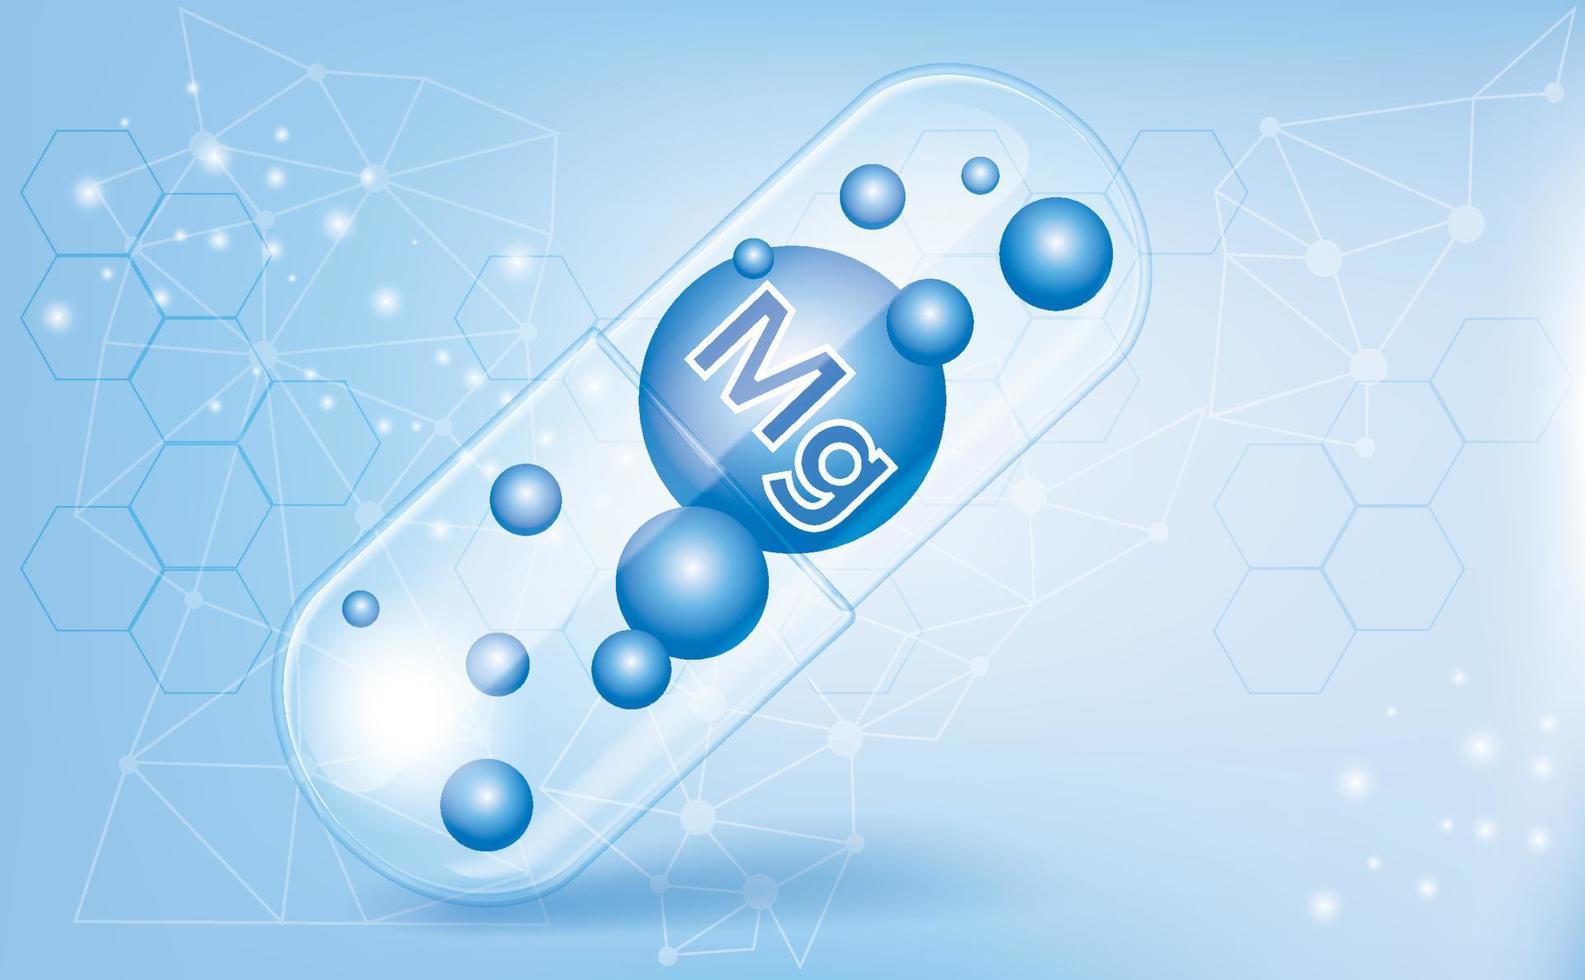 minerali mg, magnesio, vitamina all'interno di una capsula traslucida, macronutriente, integratore alimentare su sfondo blu sfumato, poster di informazioni mediche. illustrazione vettoriale